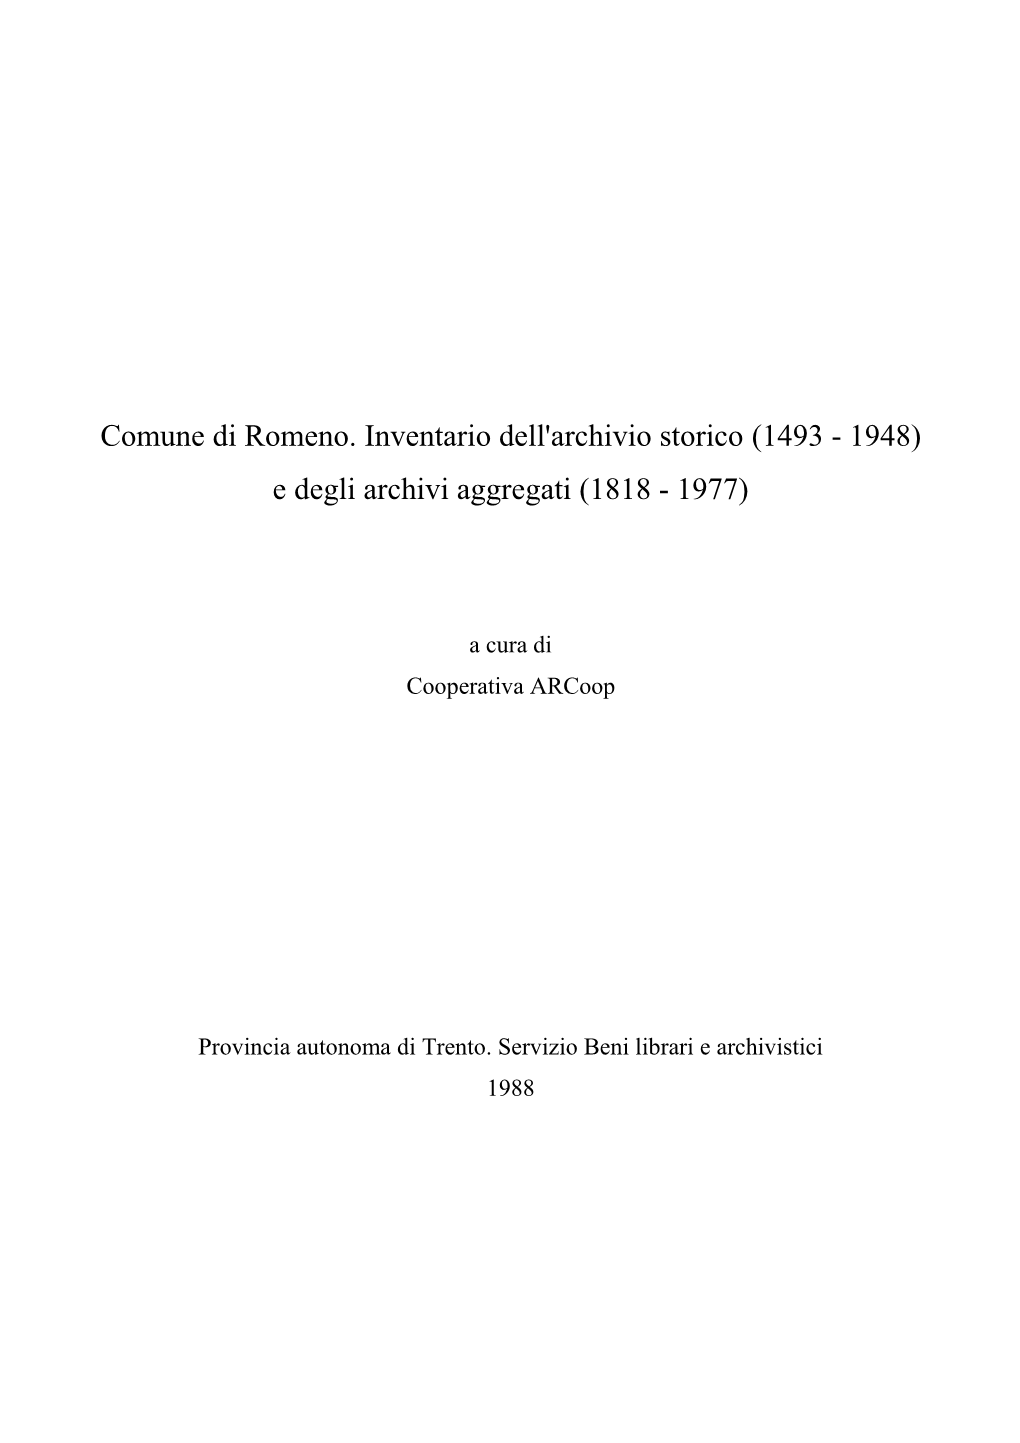 Comune Di Romeno. Inventario Dell'archivio Storico (1493 - 1948) E Degli Archivi Aggregati (1818 - 1977)